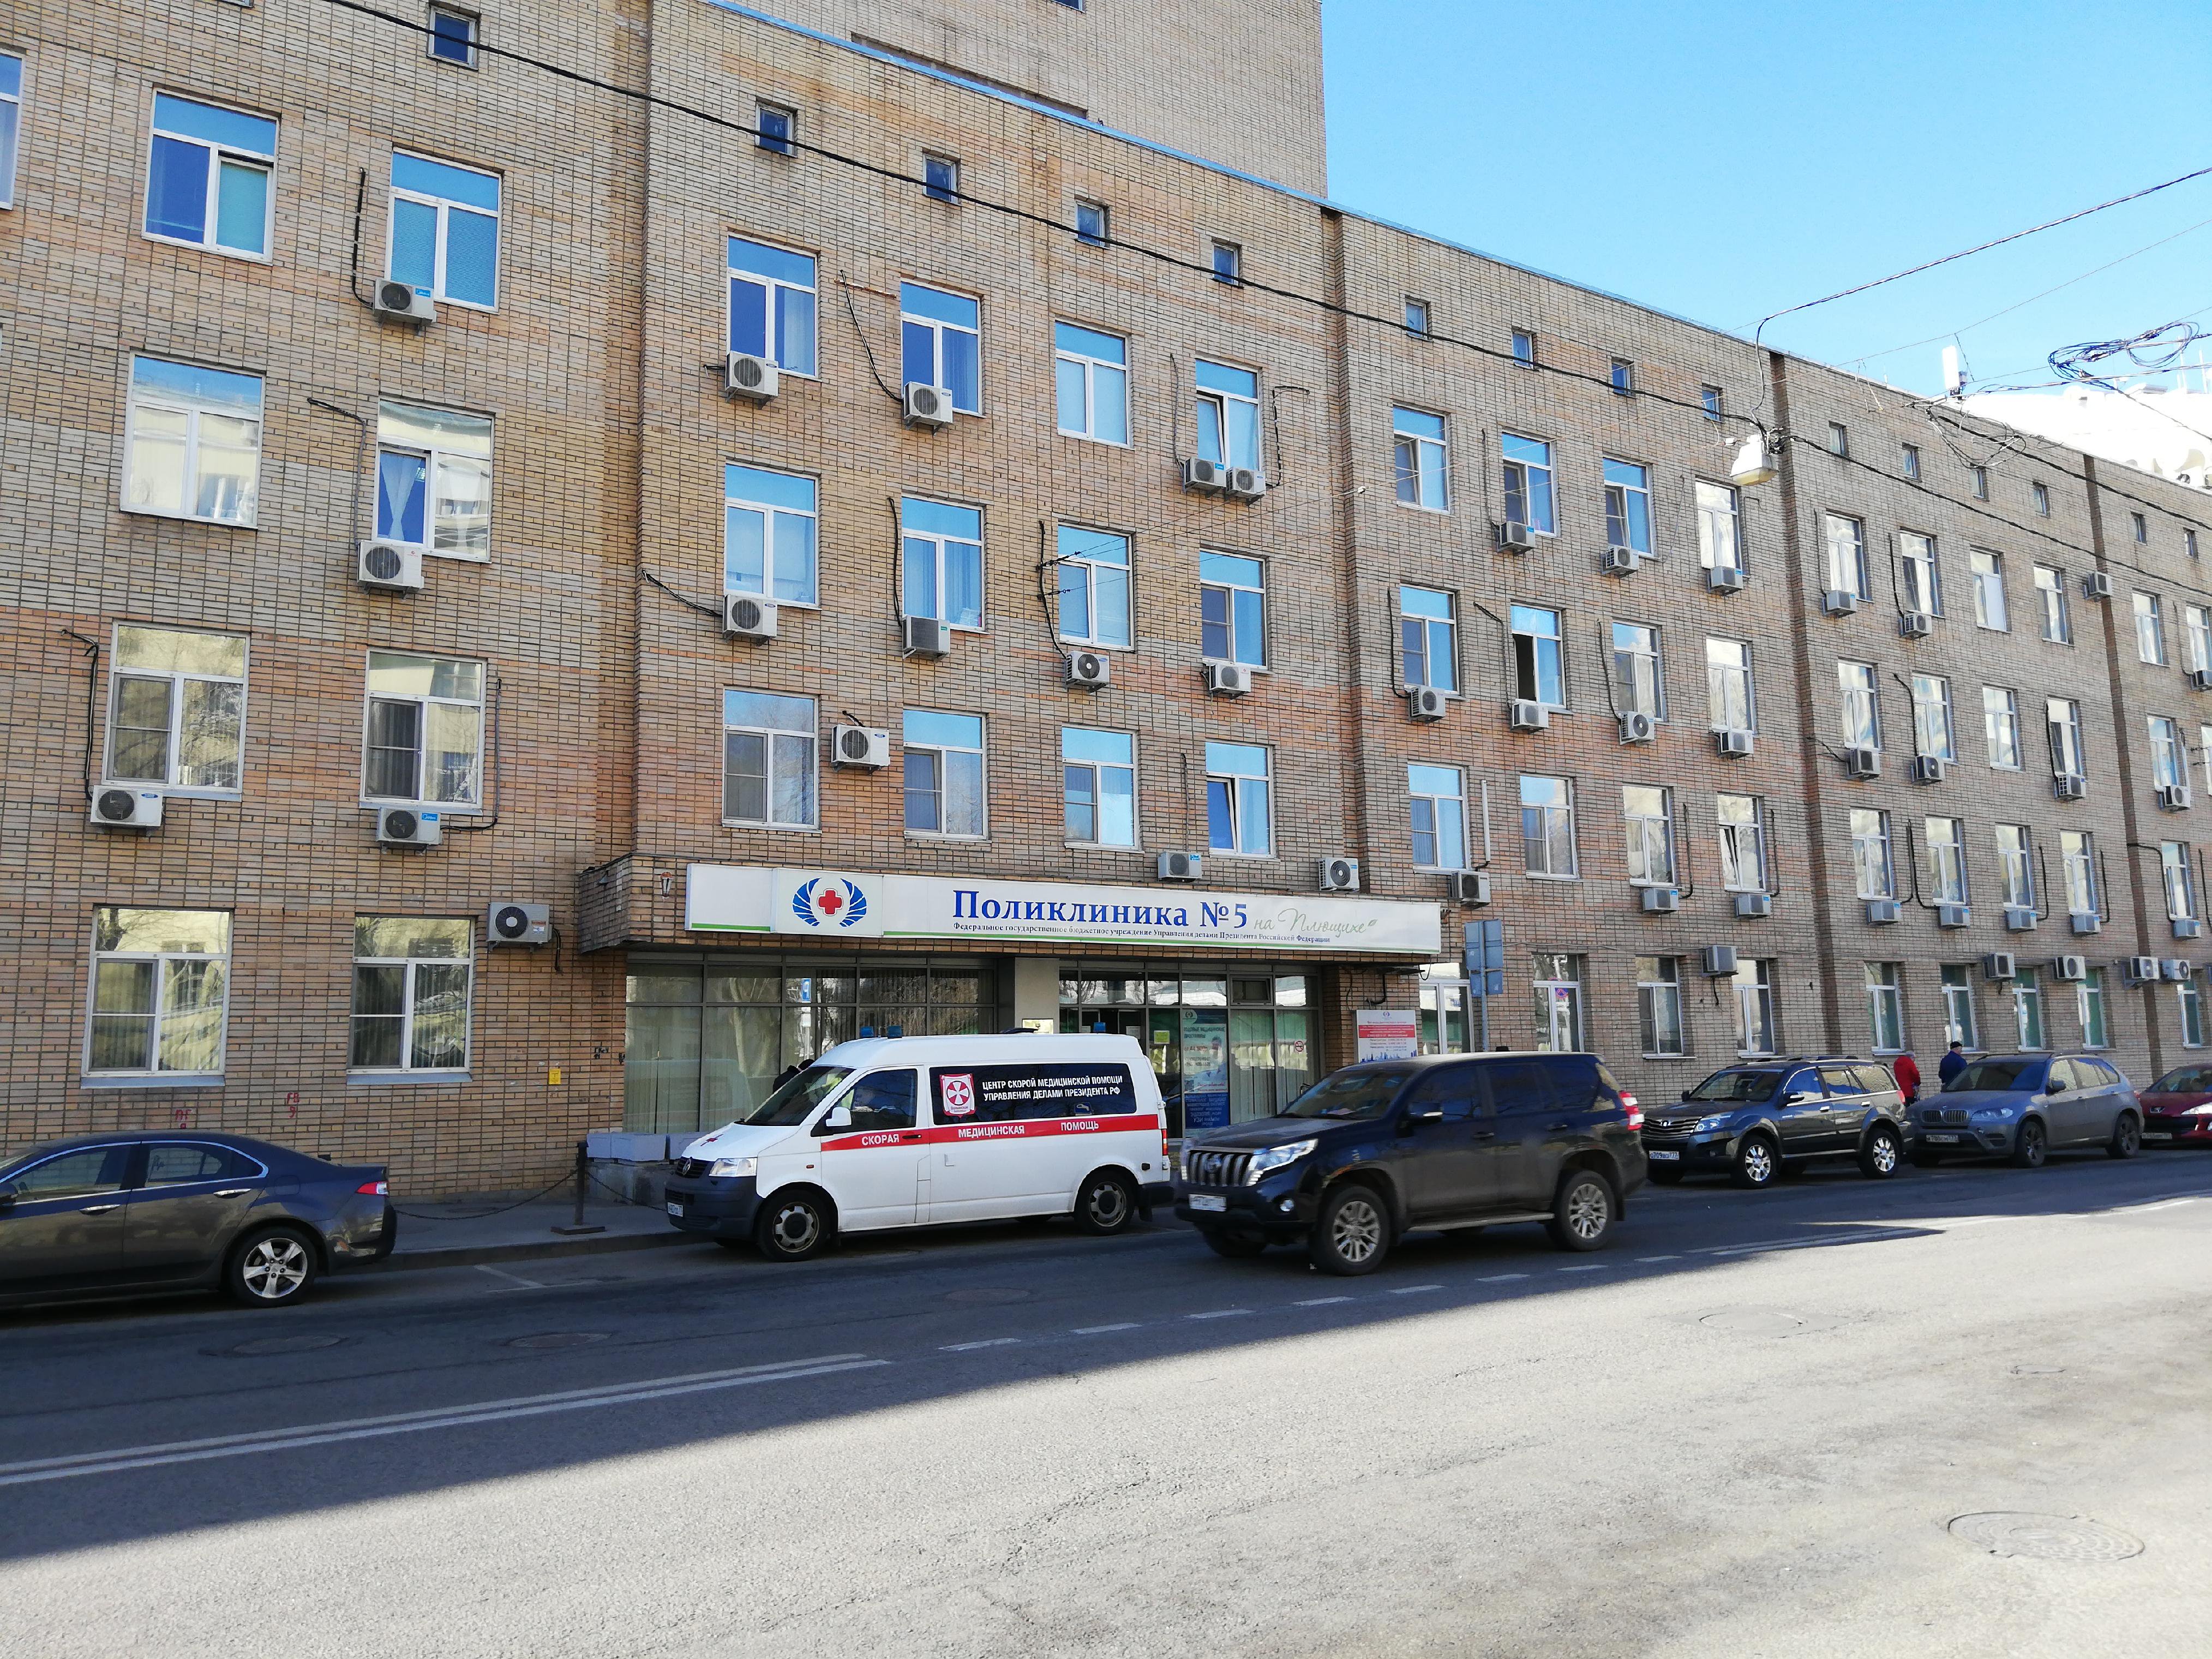 Поликлиника №5, Управление делами Президента РФ, улица Плющиха, 14, вход со стороны дороги